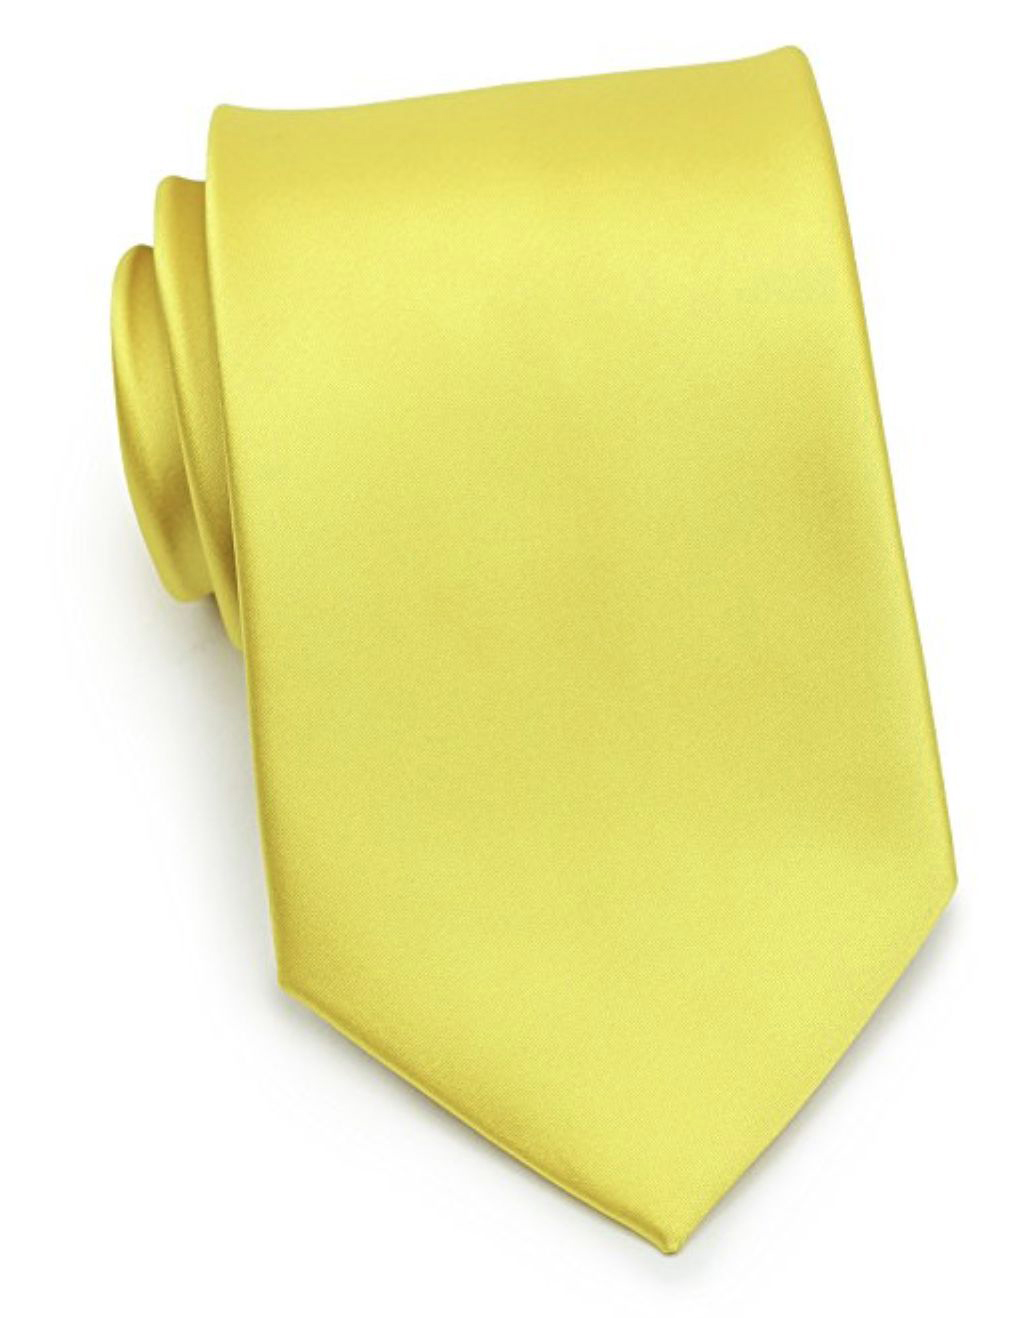 Галстук атласный широкий желтый описание: Фасон - Классический, Материал - Полиэстер, Цвет - Желтый, Размер - 8,5 см. х 150 см., Страна производства - Турция.